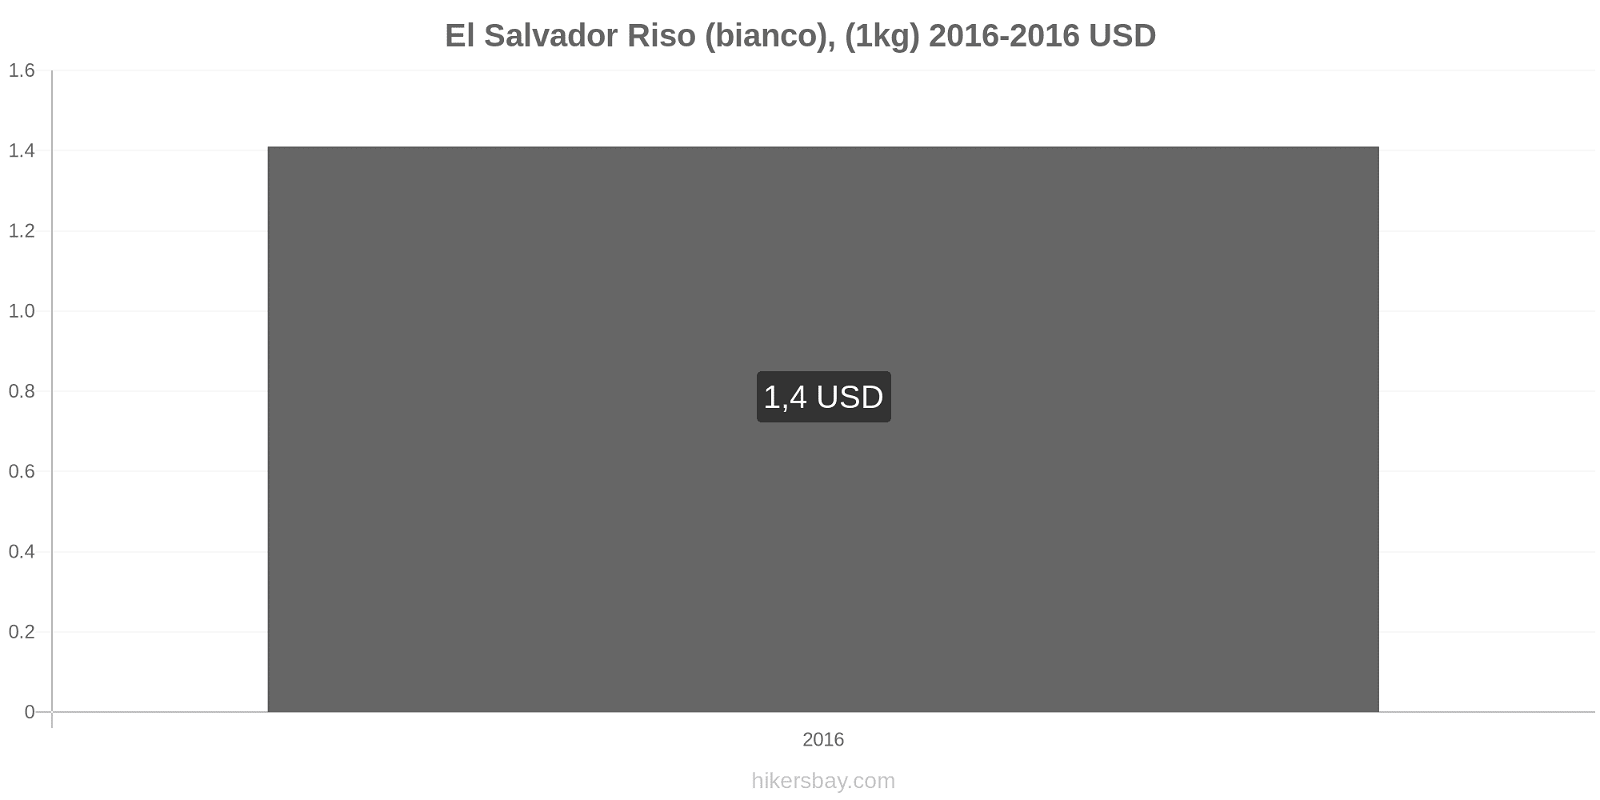 El Salvador cambi di prezzo Chilo di riso bianco hikersbay.com